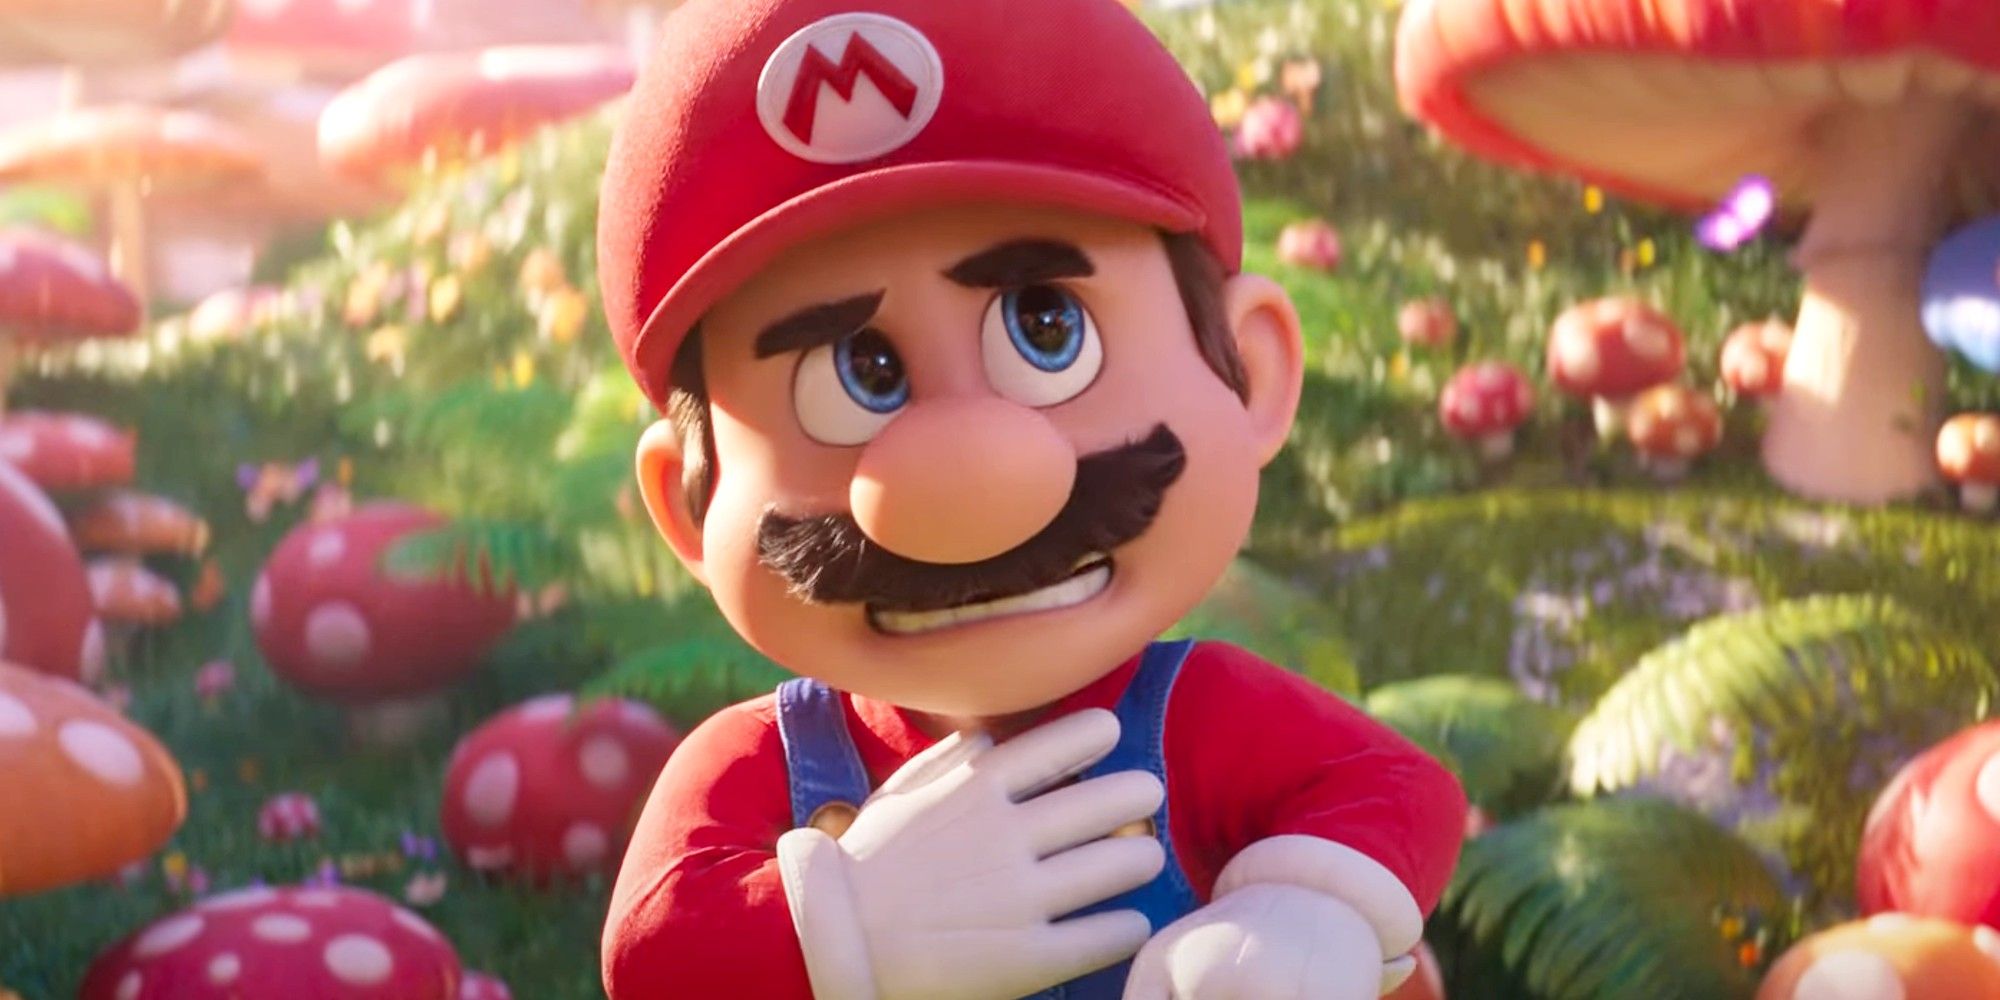 Super Mario Movie Should Have Original Voice Actor, Says Tara Strong